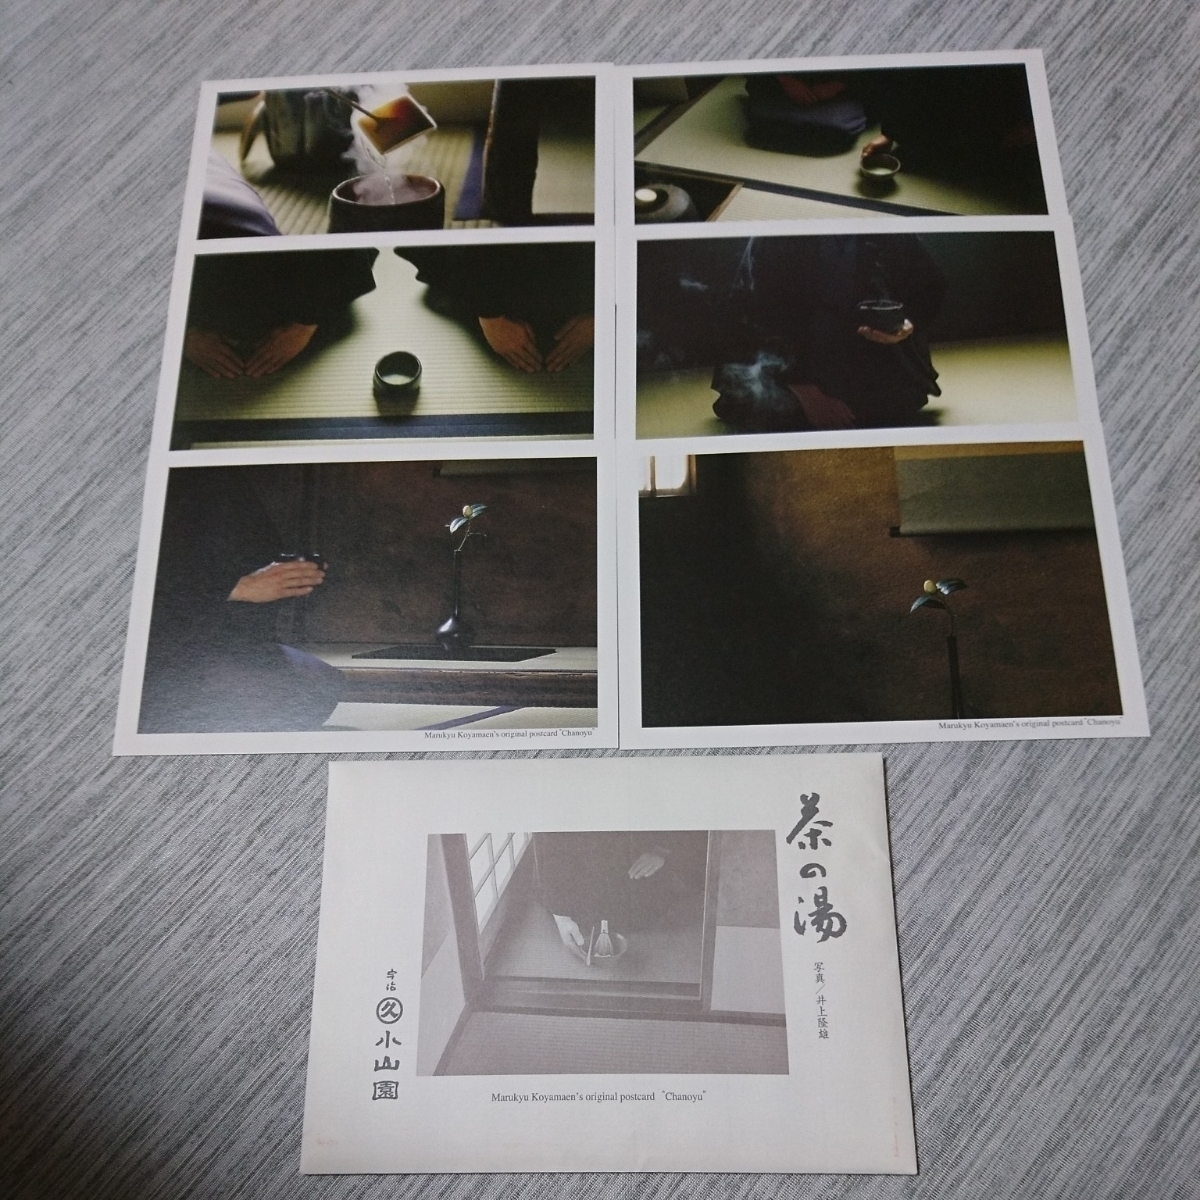 [Купите сейчас!] ★Kyoto Uji Marukyu Koyamaen Original Postcards Chanoumiyu Набор из 6 штук / Неиспользованные / Фото Такао Иноуэ, Печатные материалы, Открытка, Открытка, другие